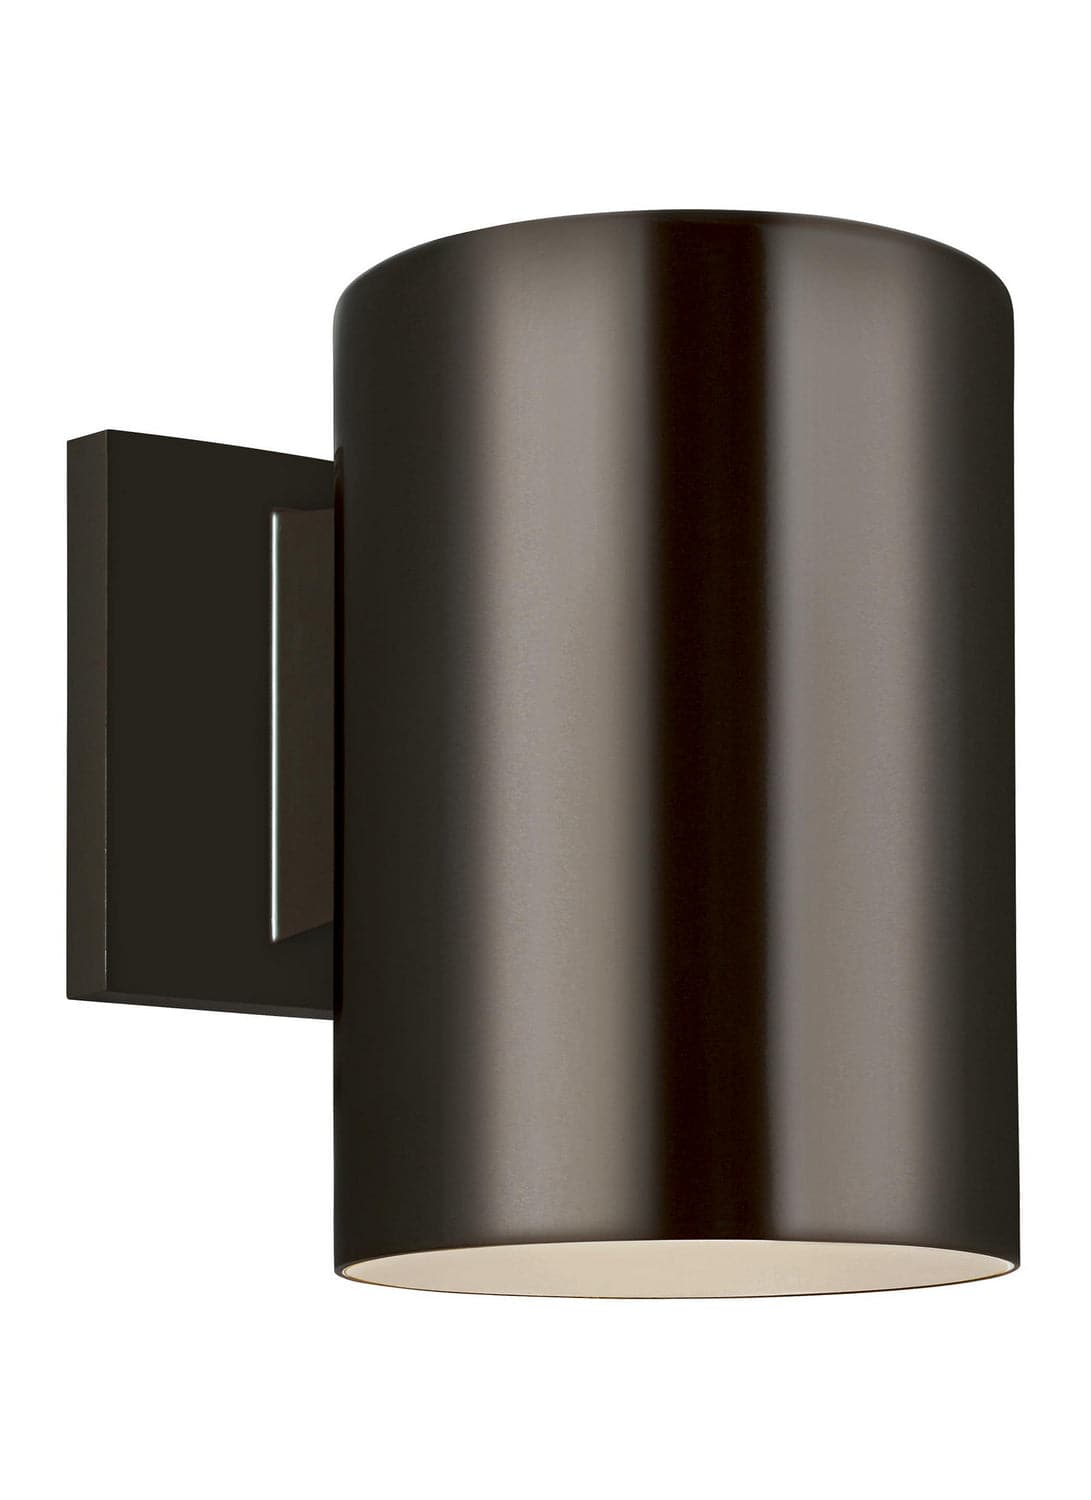 Visual Comfort Studio - 8313801-10/T - One Light Outdoor Wall Lantern - Outdoor Cylinders - Bronze